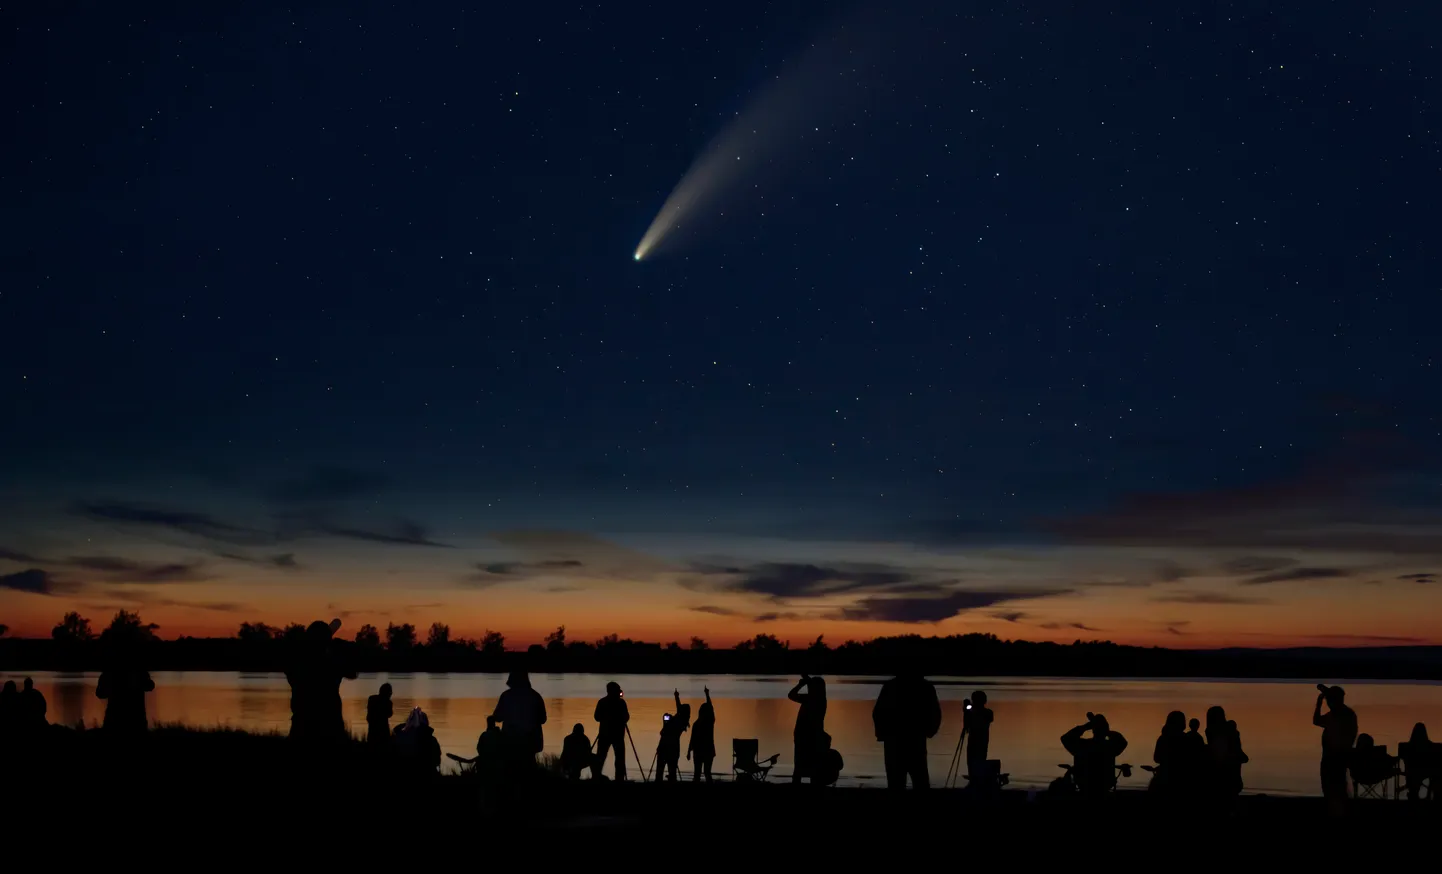 Inimesed vaatamas ja jäädvustamas komeeti. Pilt on illustreeriv